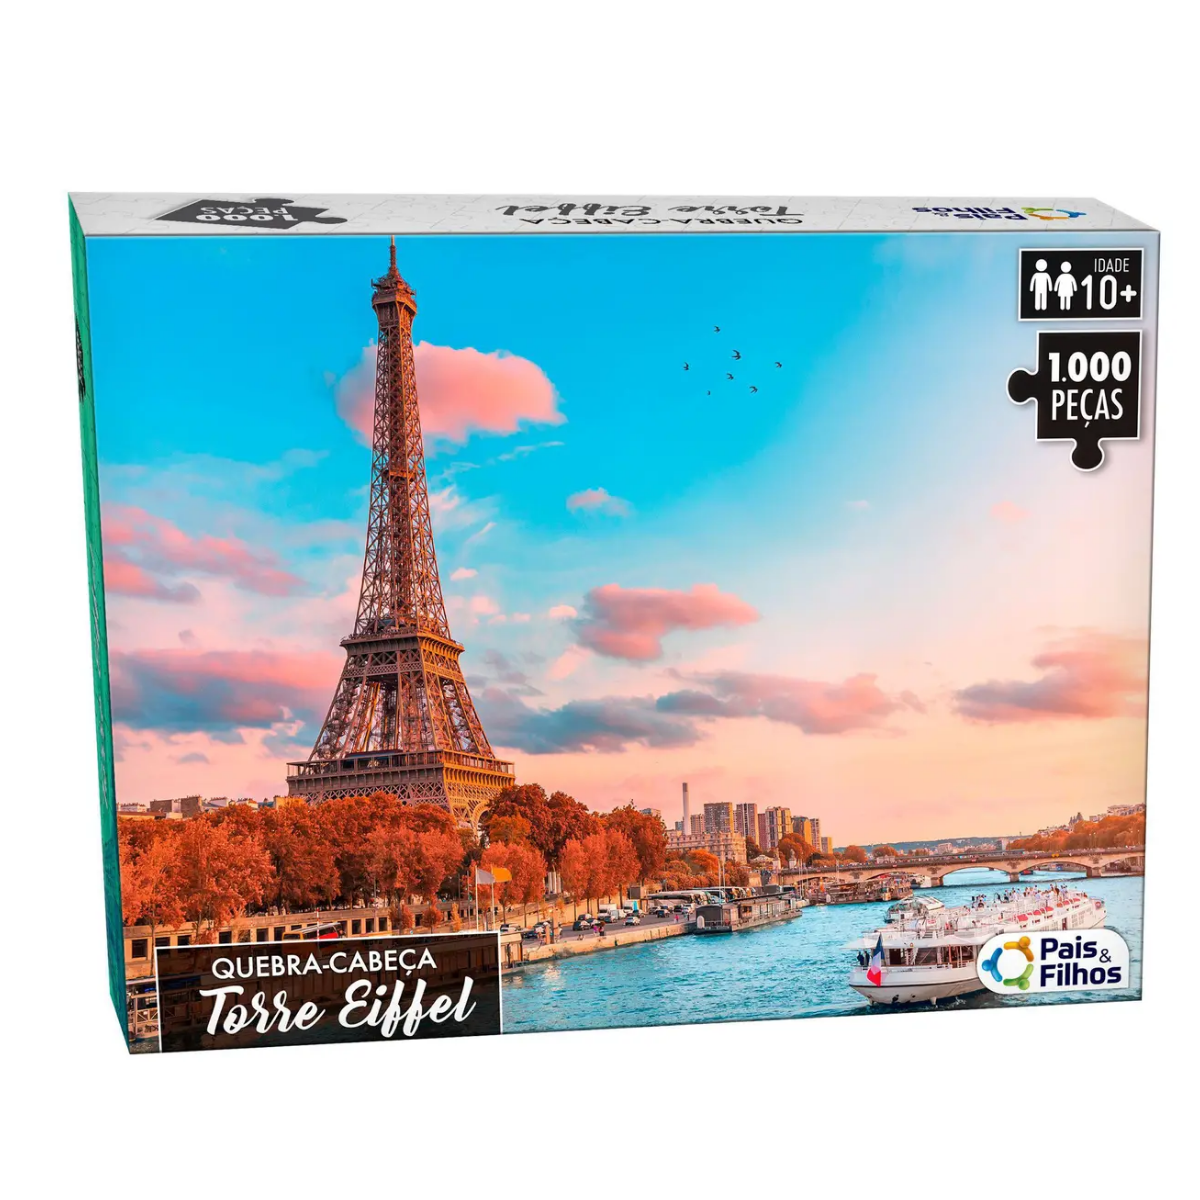 Quebra Cabeça de 1000 peças brinquedo cartonado Torre Eiffel Paris 63cm x 45,5cmm - 3